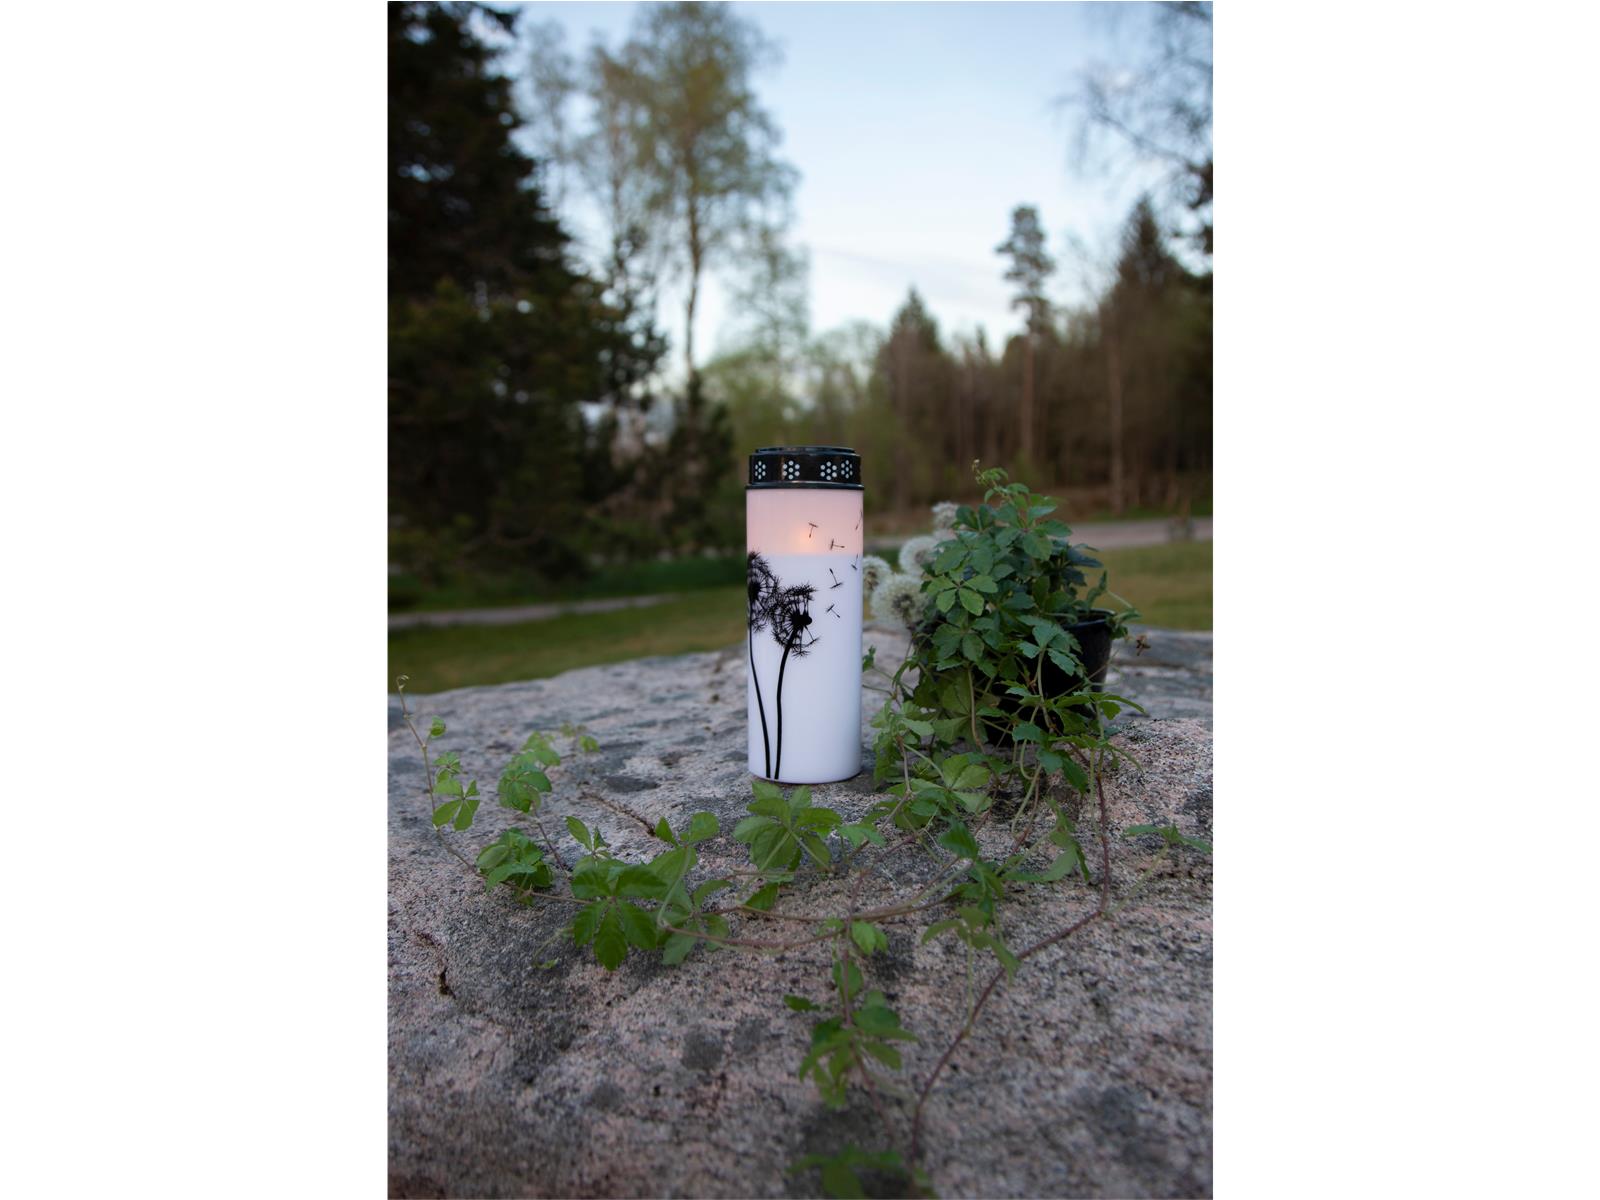 LED-Grablicht ''Dandelion'', weiß mit Pusteblumenmotiv, warmweiß, 21x7cm, outdoor